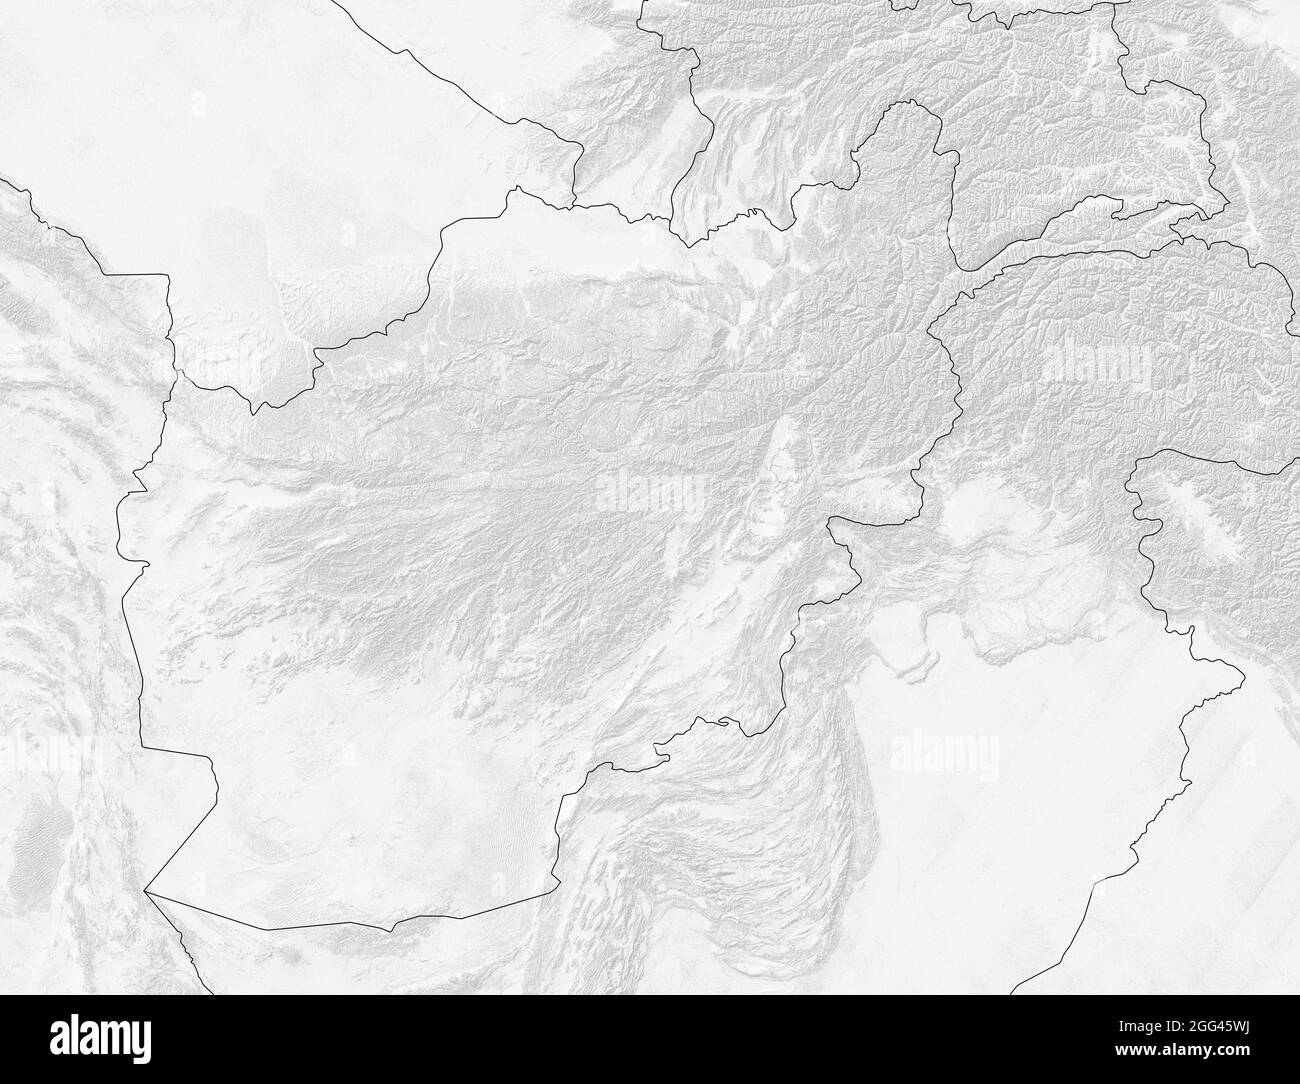 Mappa satellitare dell'Afghanistan, mappa fisica, rilievi e montagne. Bianco e nero. Confini nazionali. rendering 3d Foto Stock